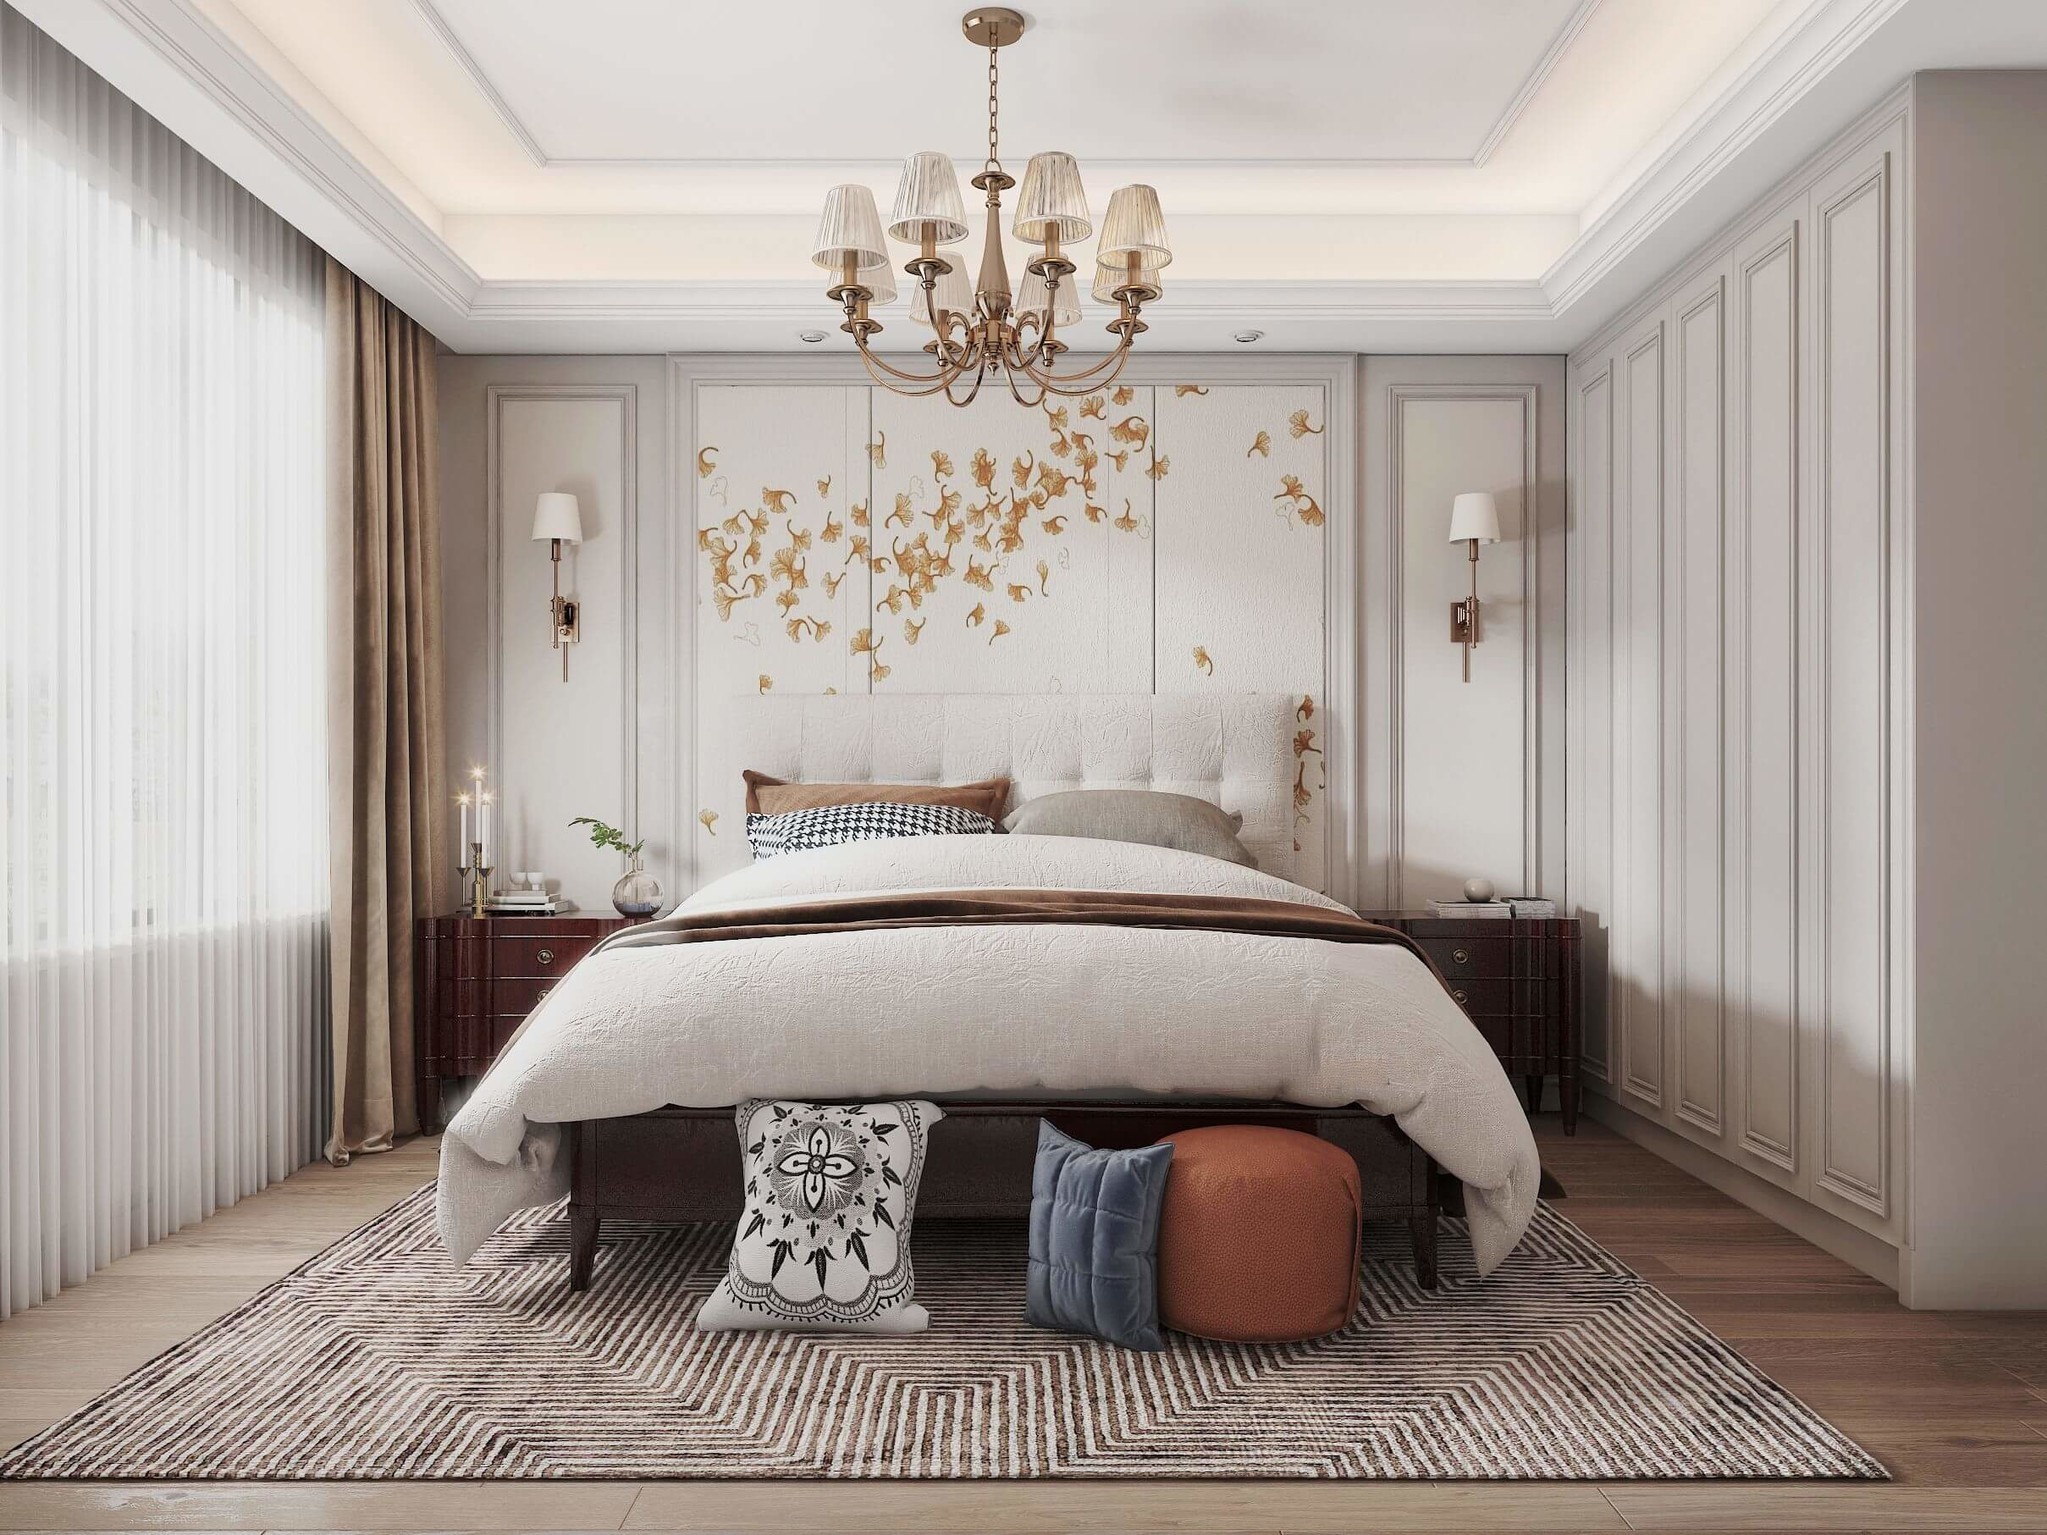 杨浦区上海院子265平美式风格独栋别墅卧室装修效果图